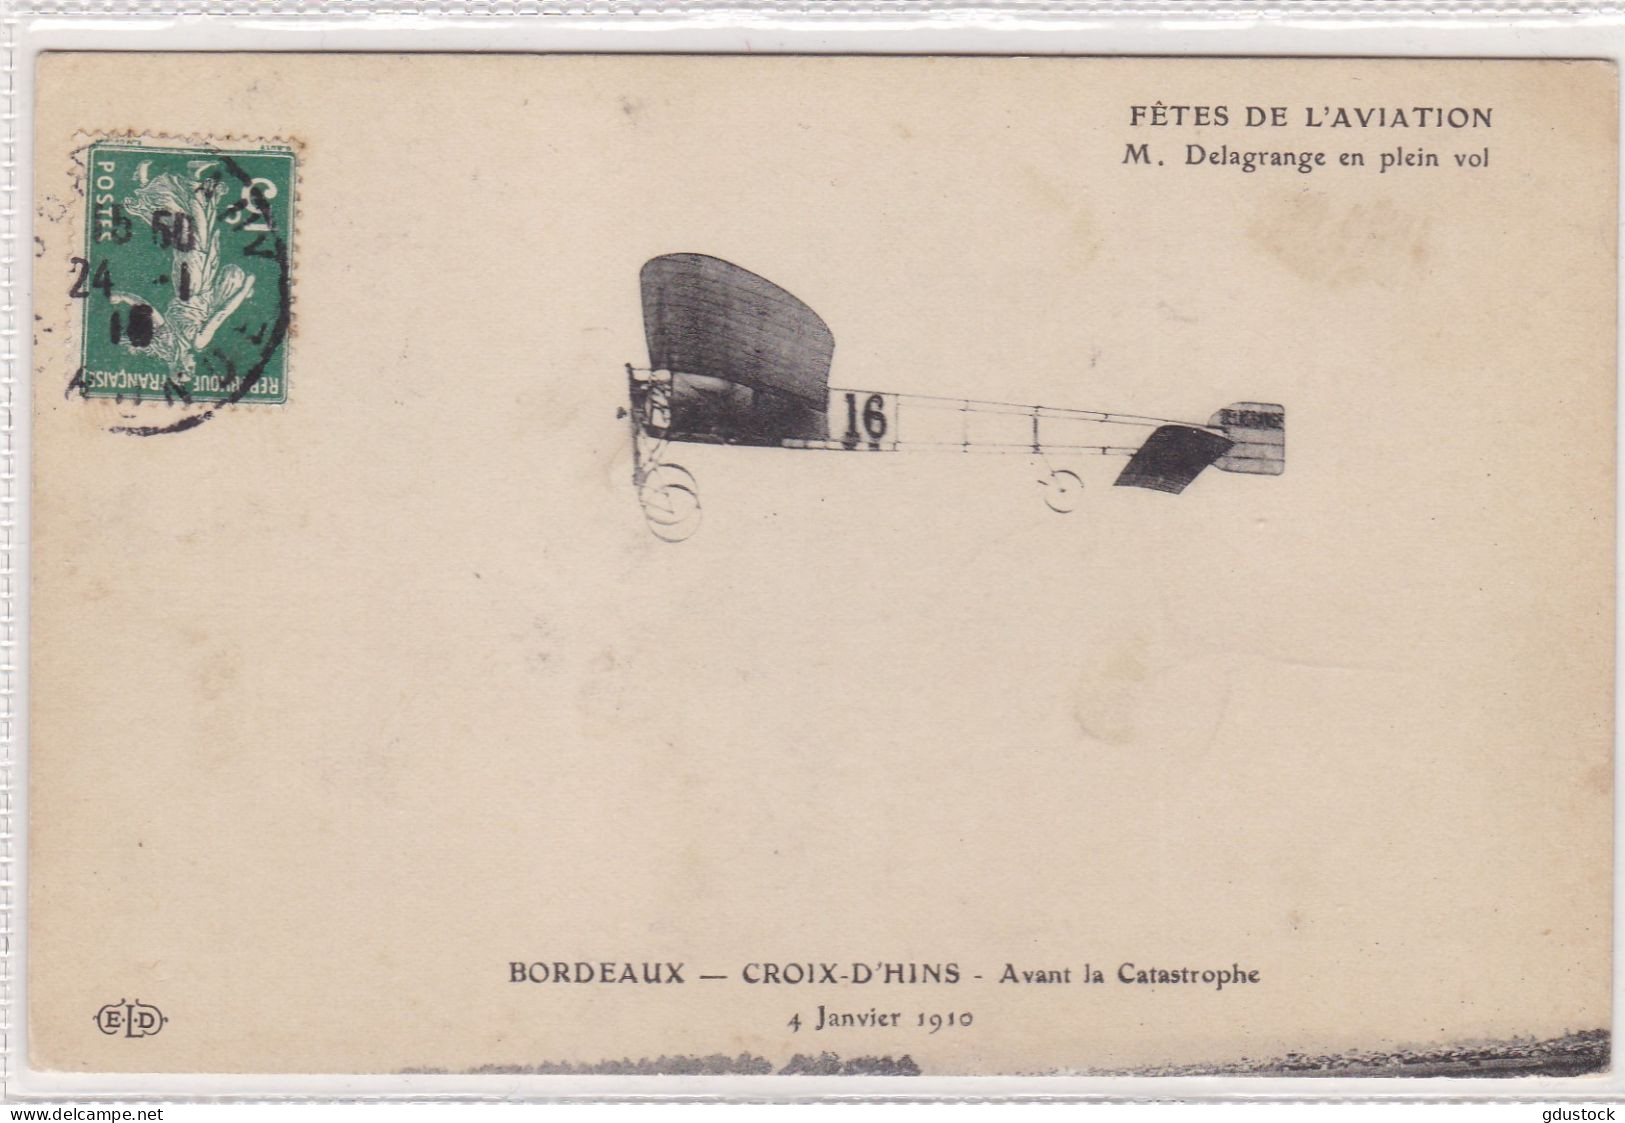 Fêtes De L'Aviation - M. Delagrange En Plein Vol - Bordeaux - Croix D'Hins - Avant La Catastrophe 4 Janvier 1910 - Flieger